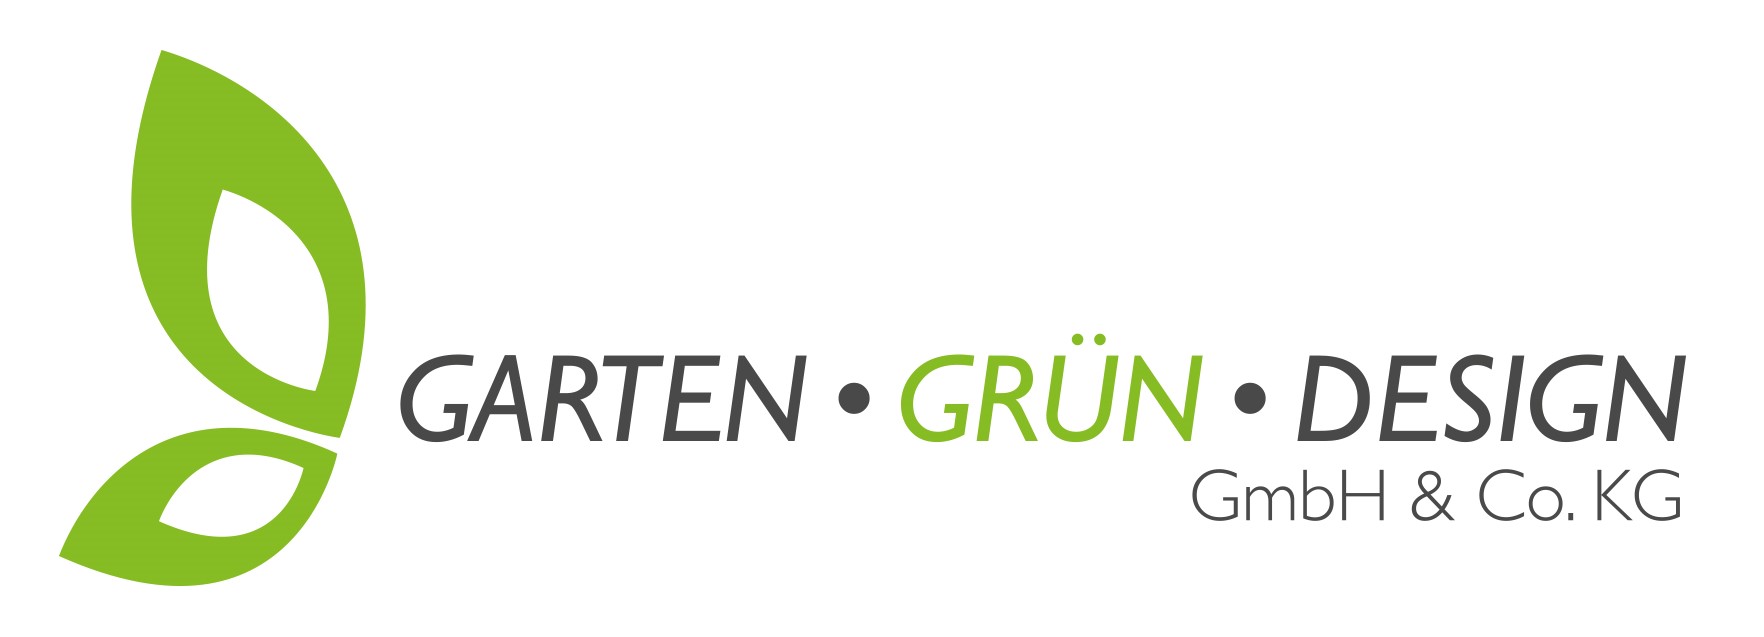 Immovation - Garten-Grün-Design GmbH & Co. KG